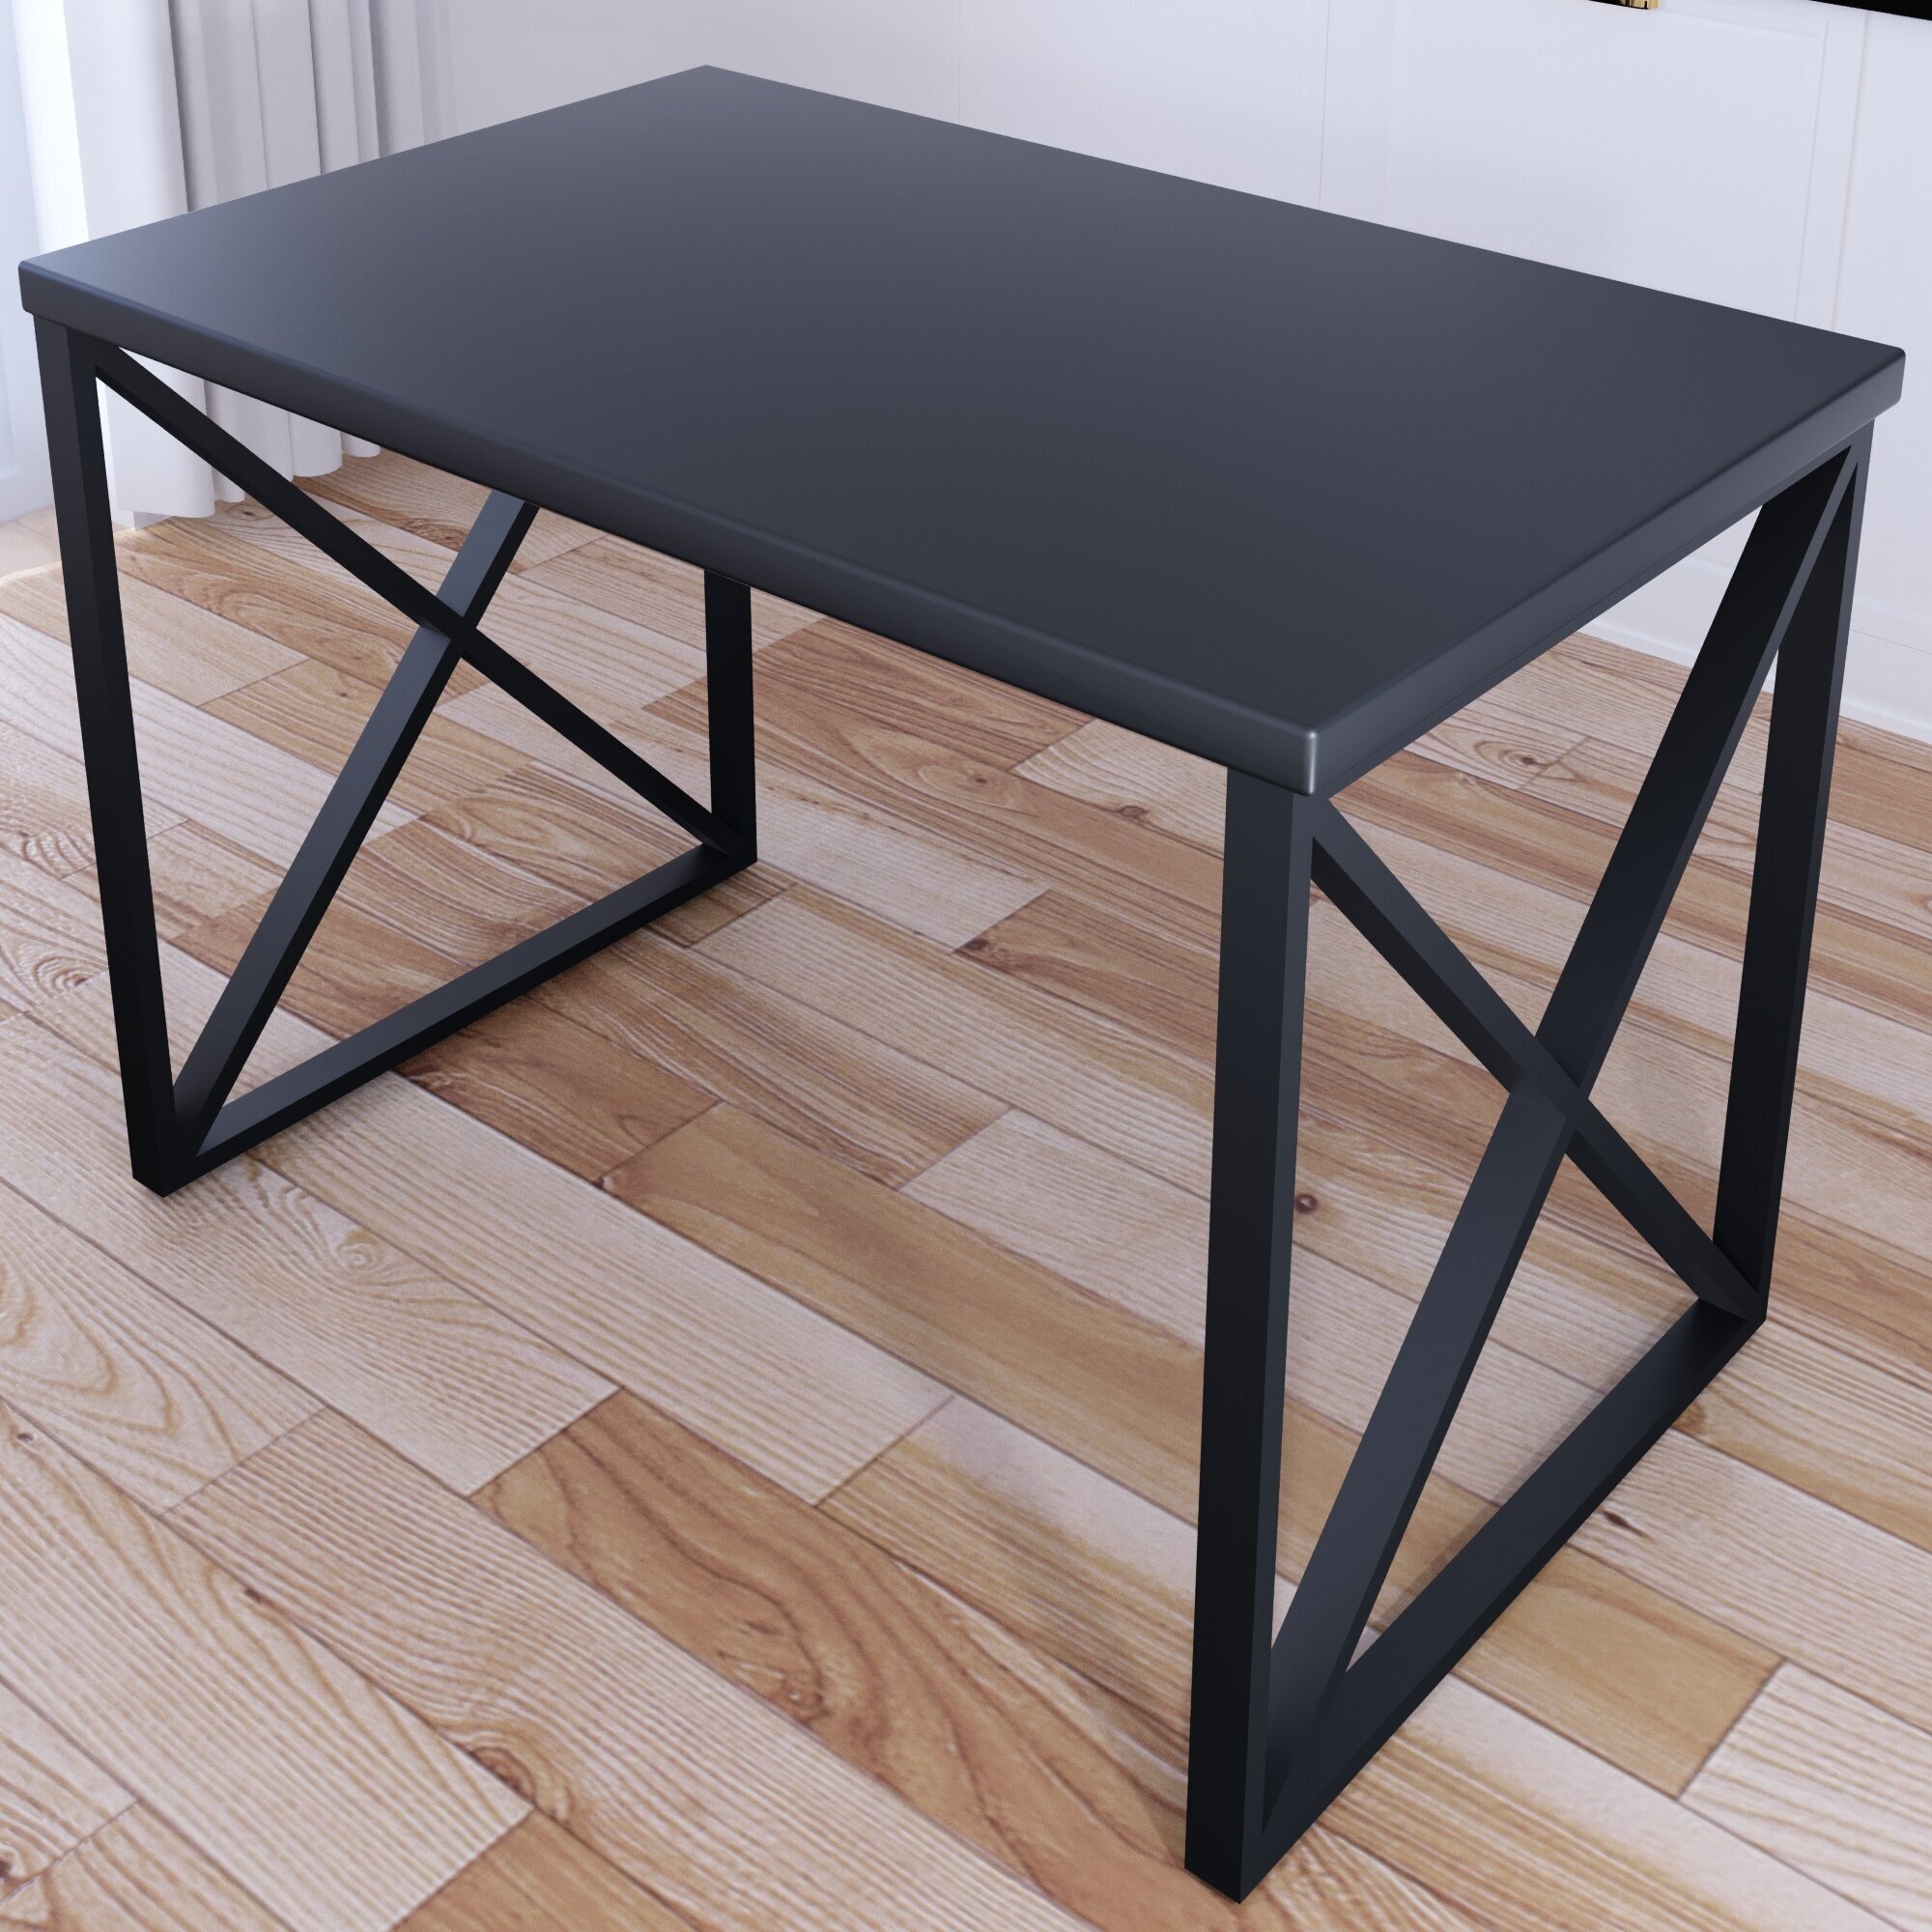 Стол кухонный Loft со столешницей цвета антрацит из массива сосны 40 мм и черными металлическими крестообразными ножками, 110х60х75 см